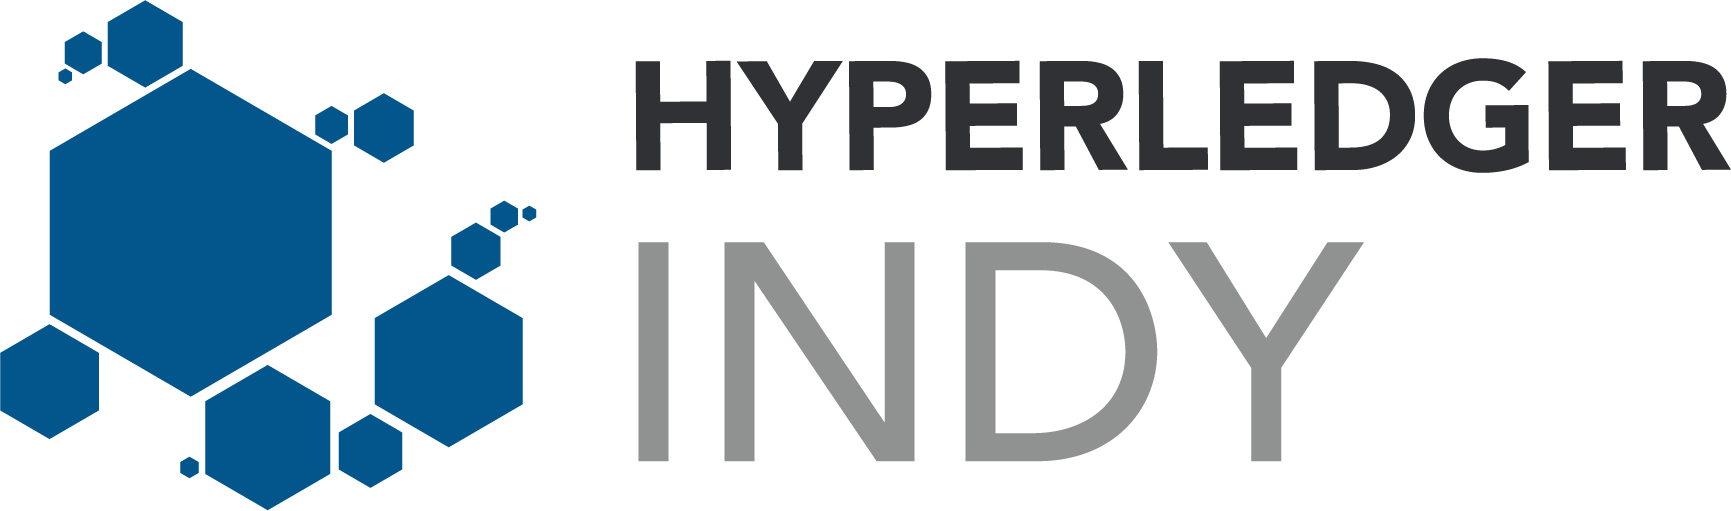 Hyperledger_Indy_Logo_Color